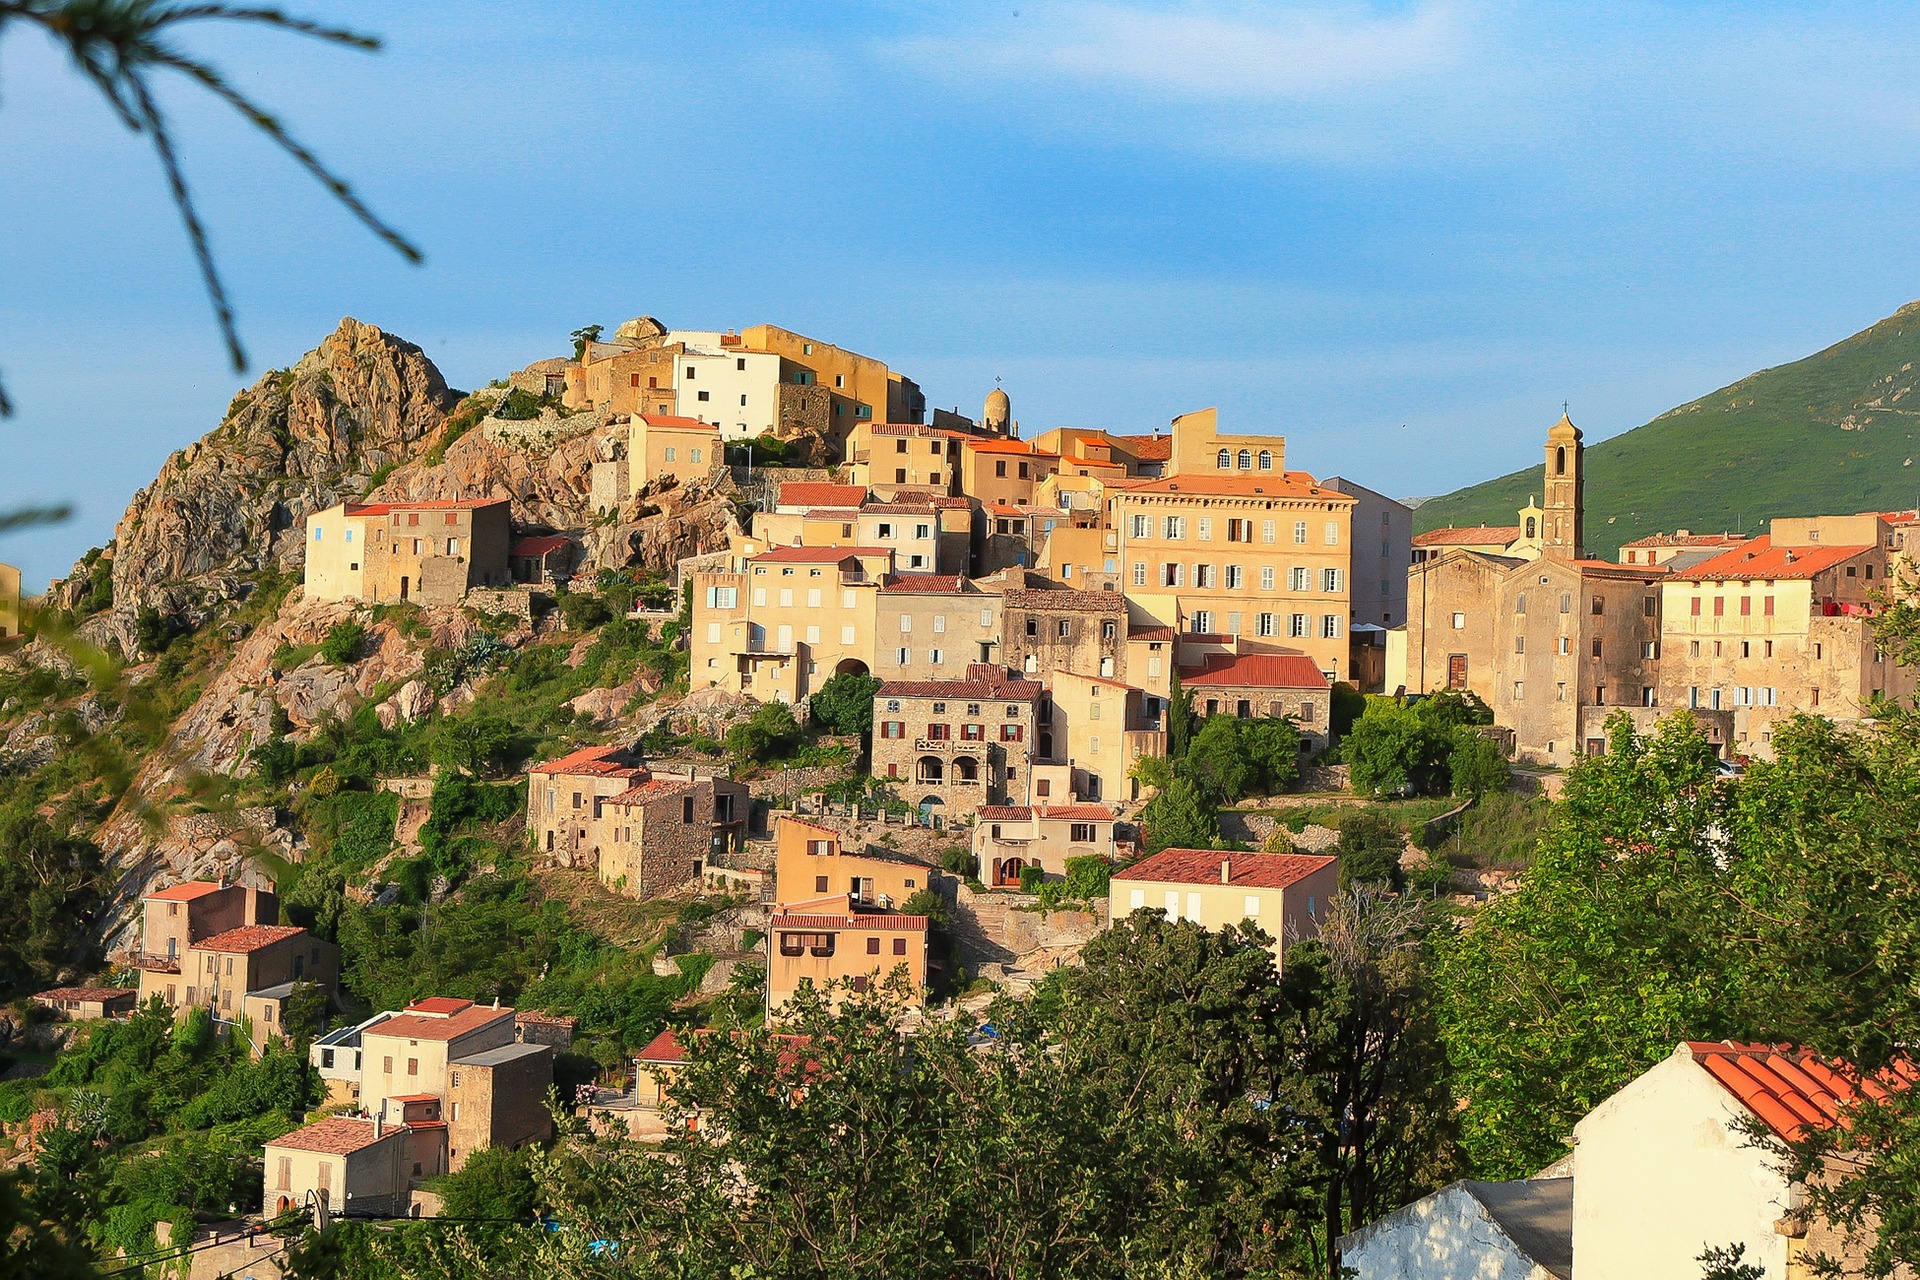 Louer une maison de vacances en Corse